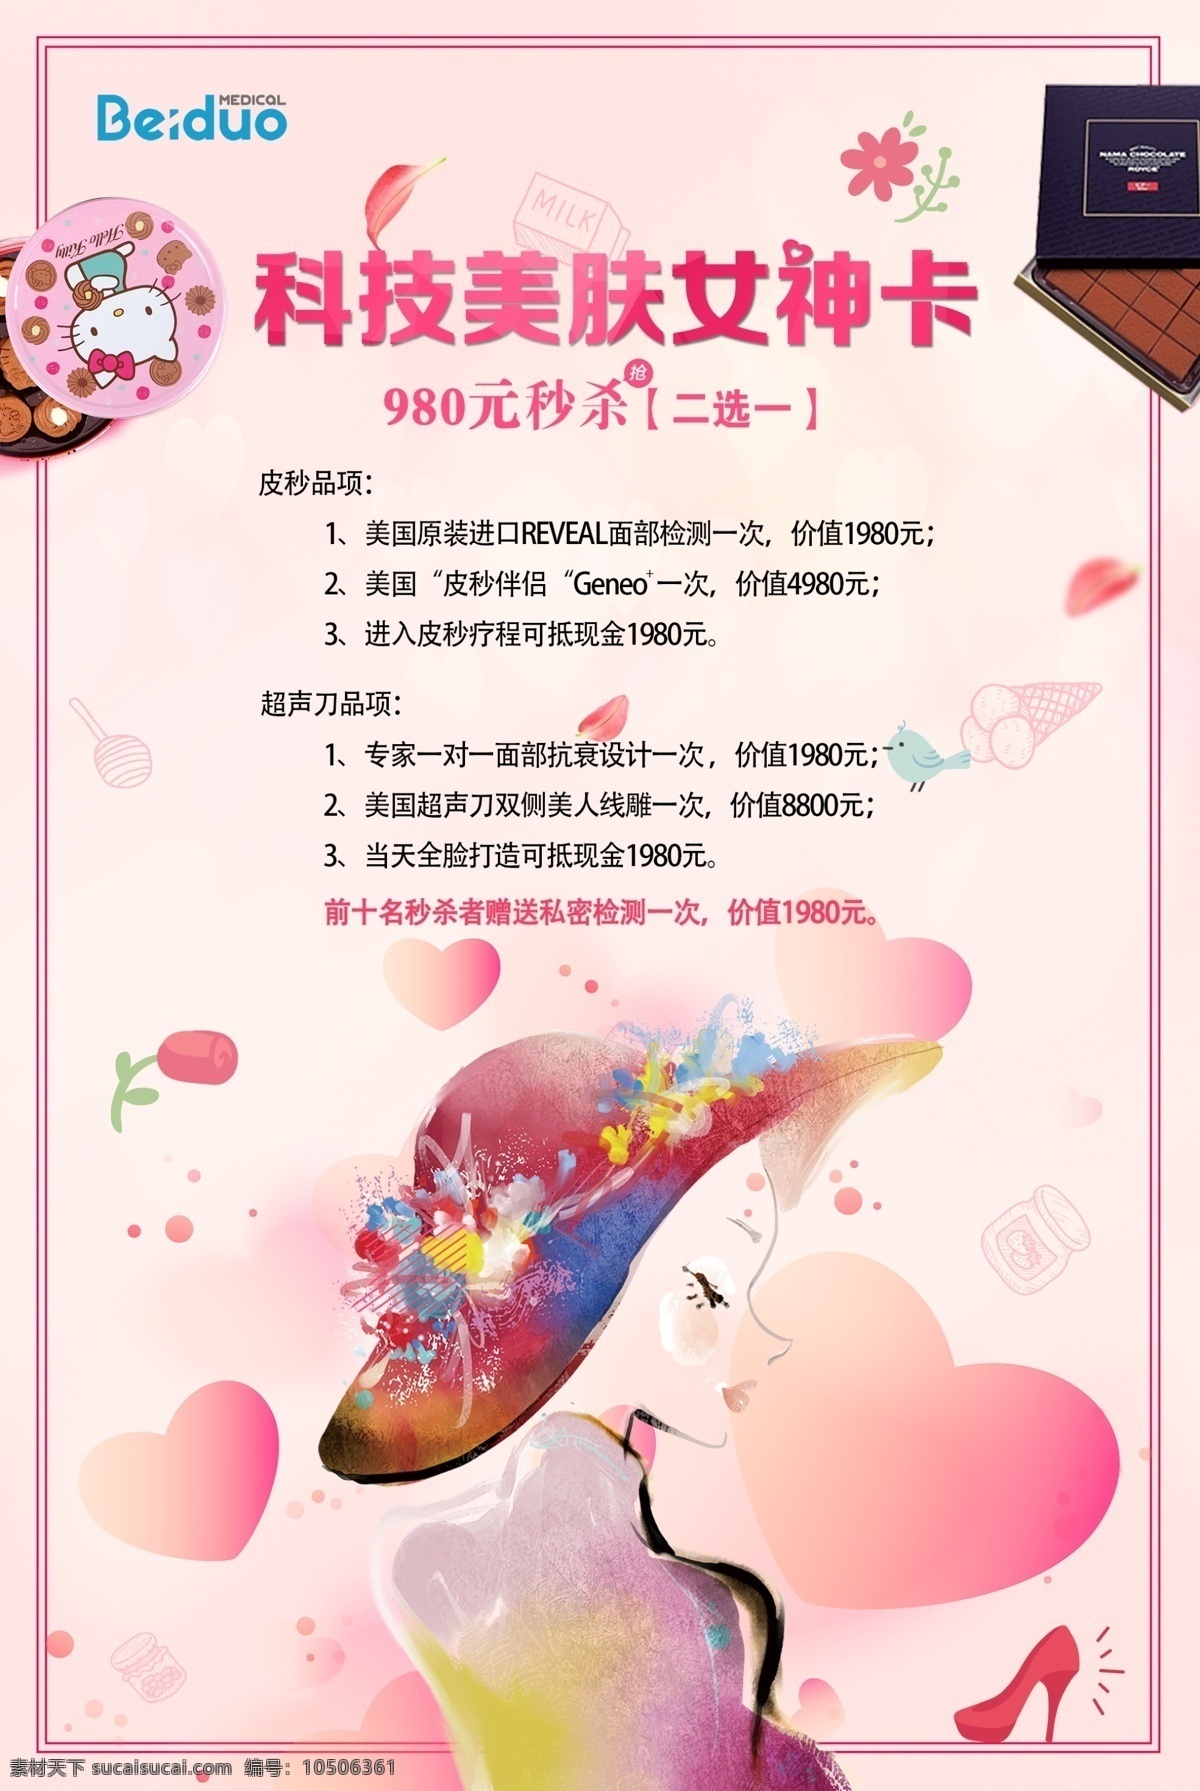 粉色 卡通 人物 女神 卡 促销 粉红色 女神节 女神卡 商场 微信朋友圈 宣传